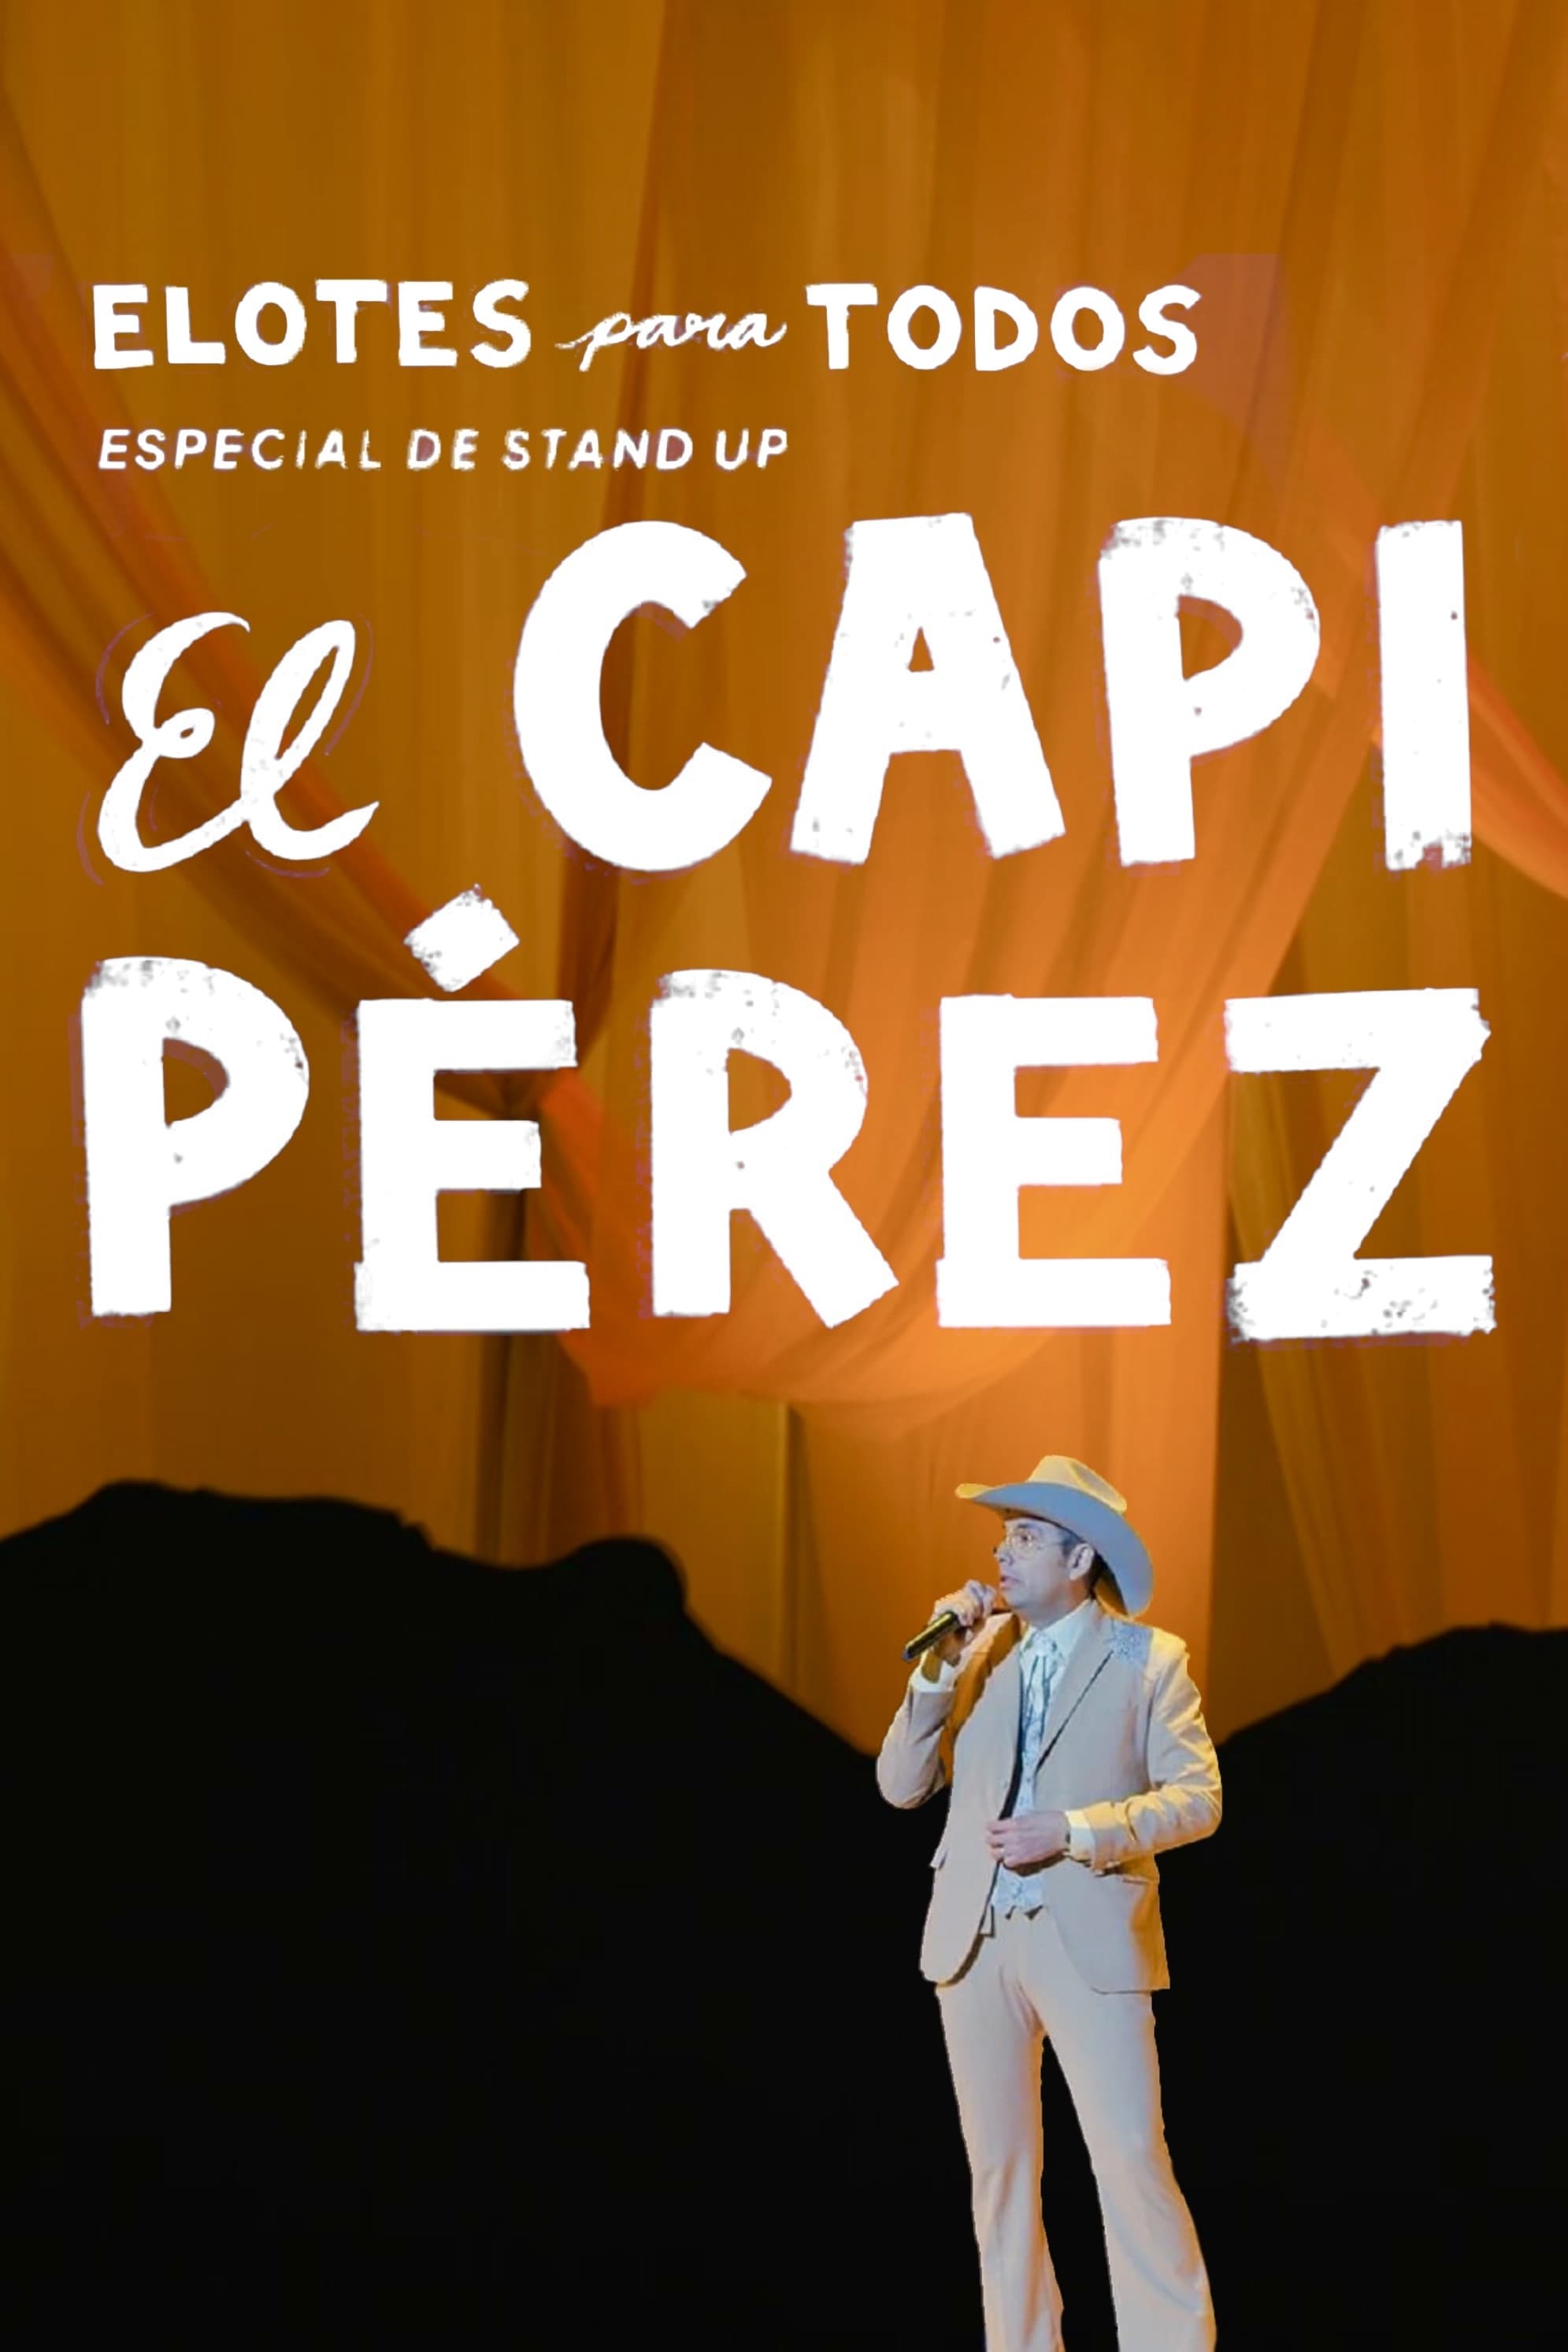 Capi Pérez: Corn for Everyone